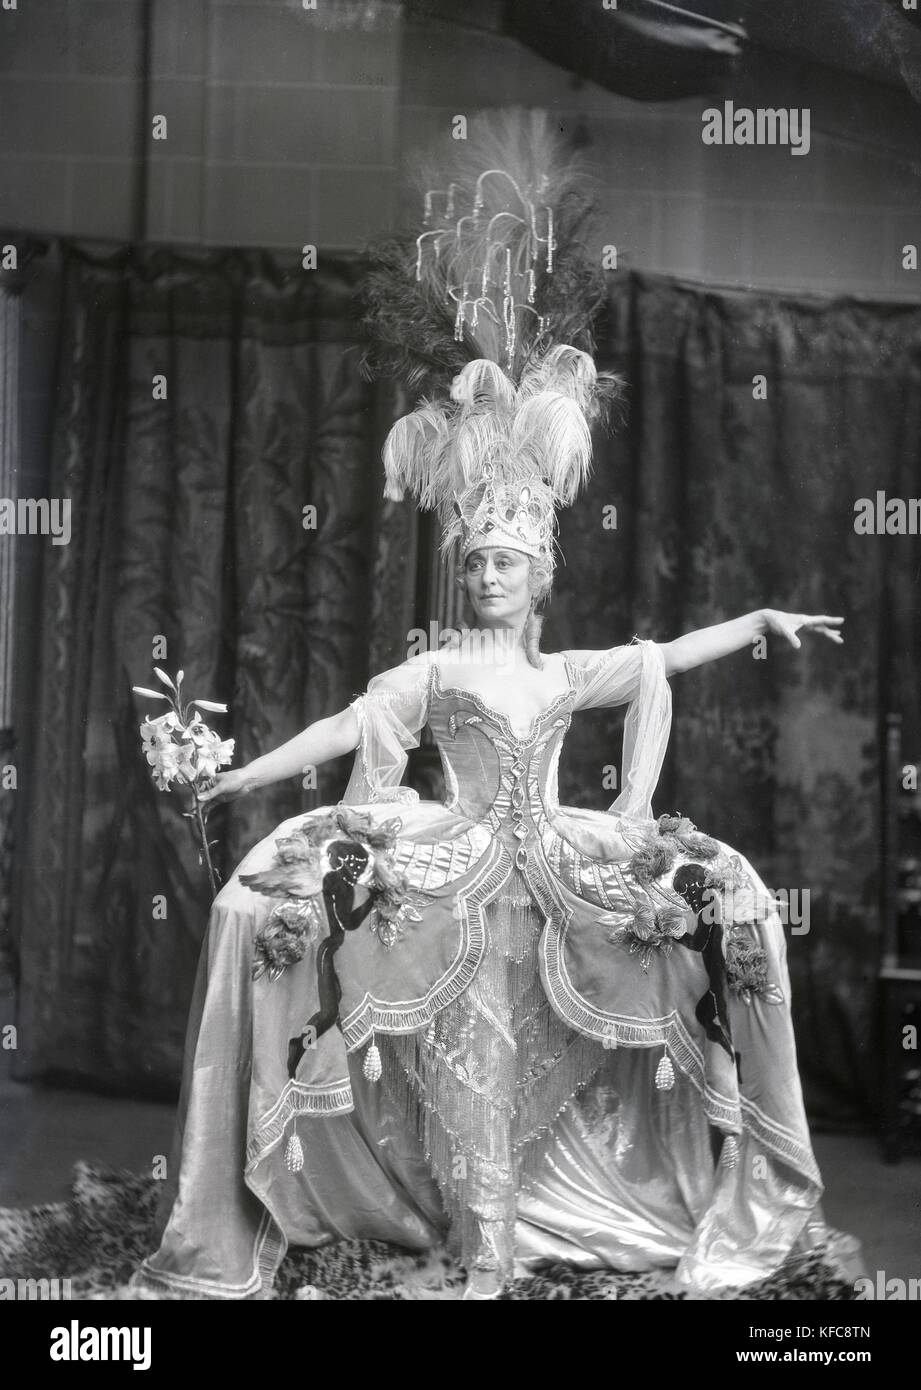 Cecile Emilie Seurre, bekannt als Cécile Sorel (1873-1966) ein Kostüm trägt für die Revue (wahrscheinlich) "Vive Paris, im Casino de Paris 1933 gespielt. Schauspielerin und Mitglied von la Comedie Francaise. Stockfoto